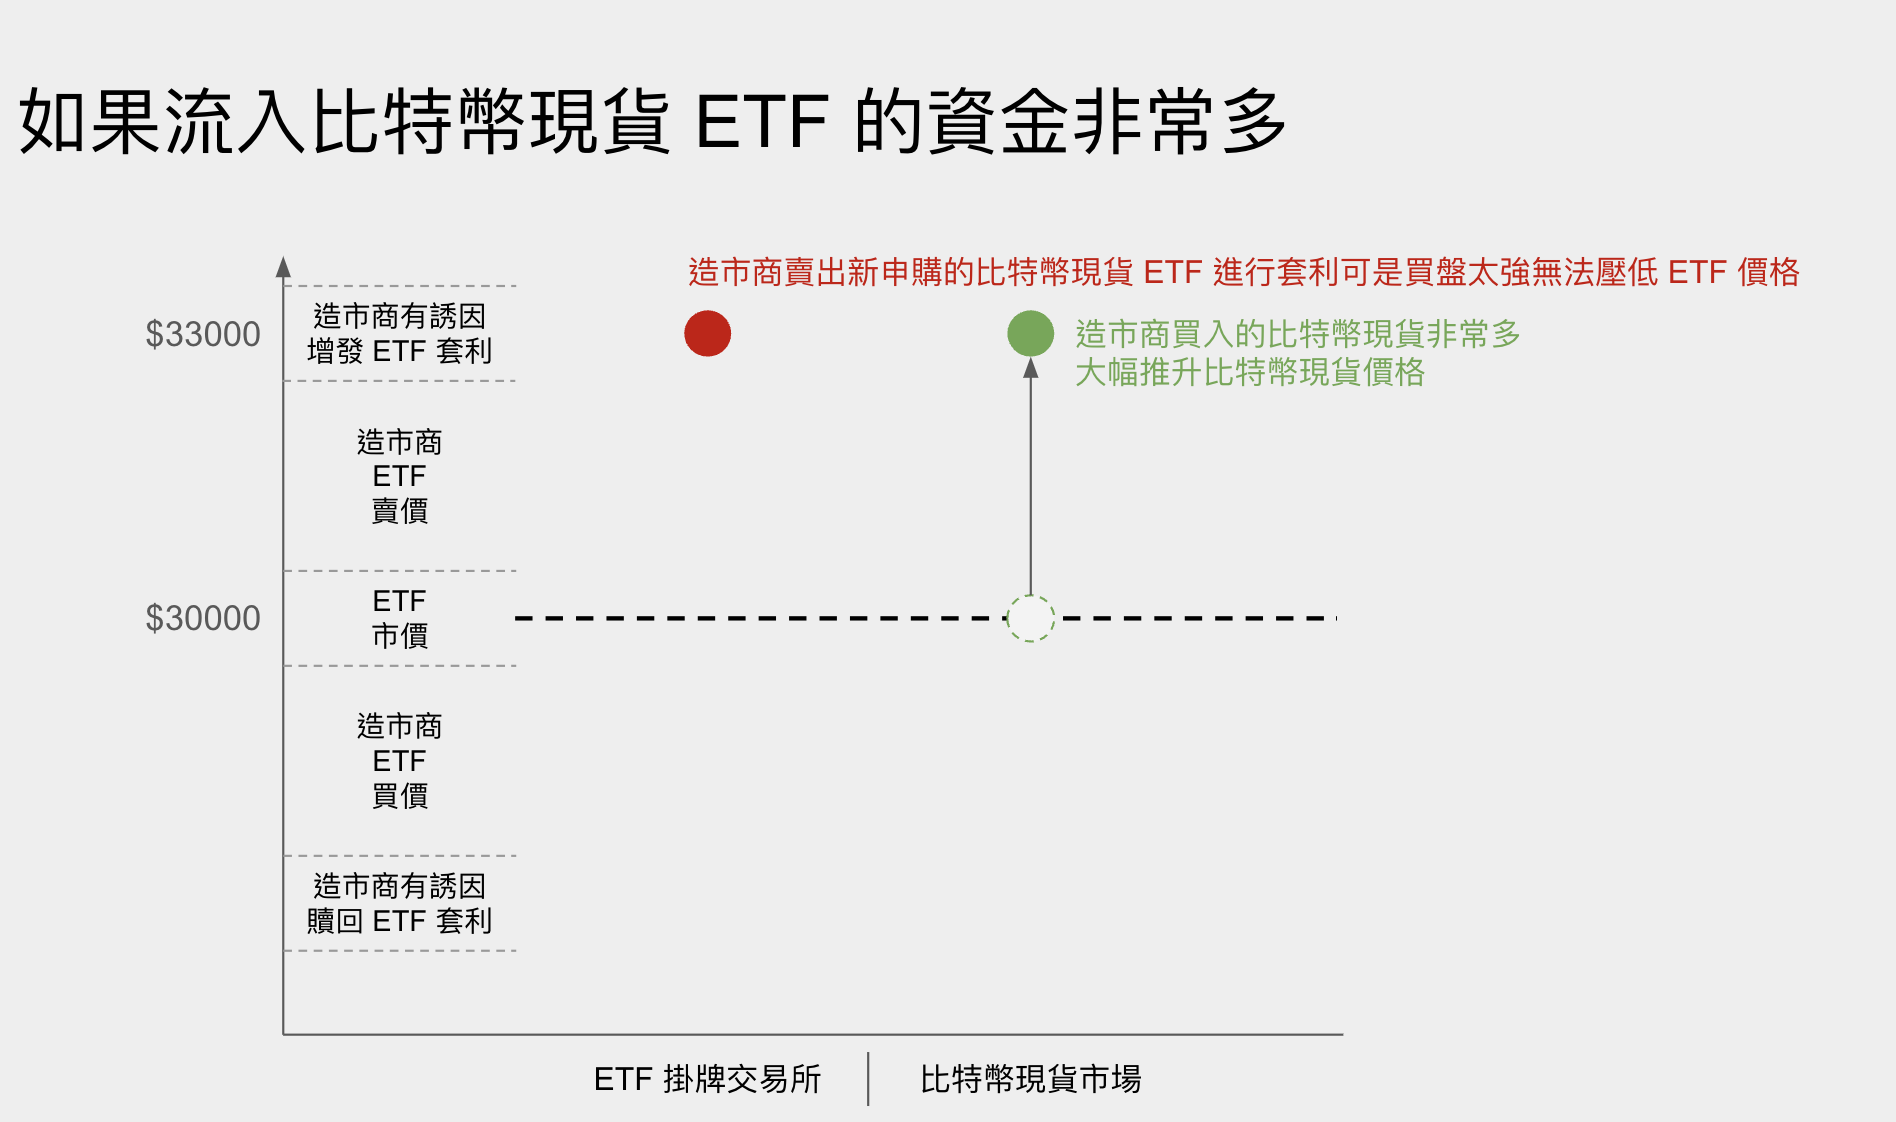 如果流入比特幣現貨 ETF 的資金非常多